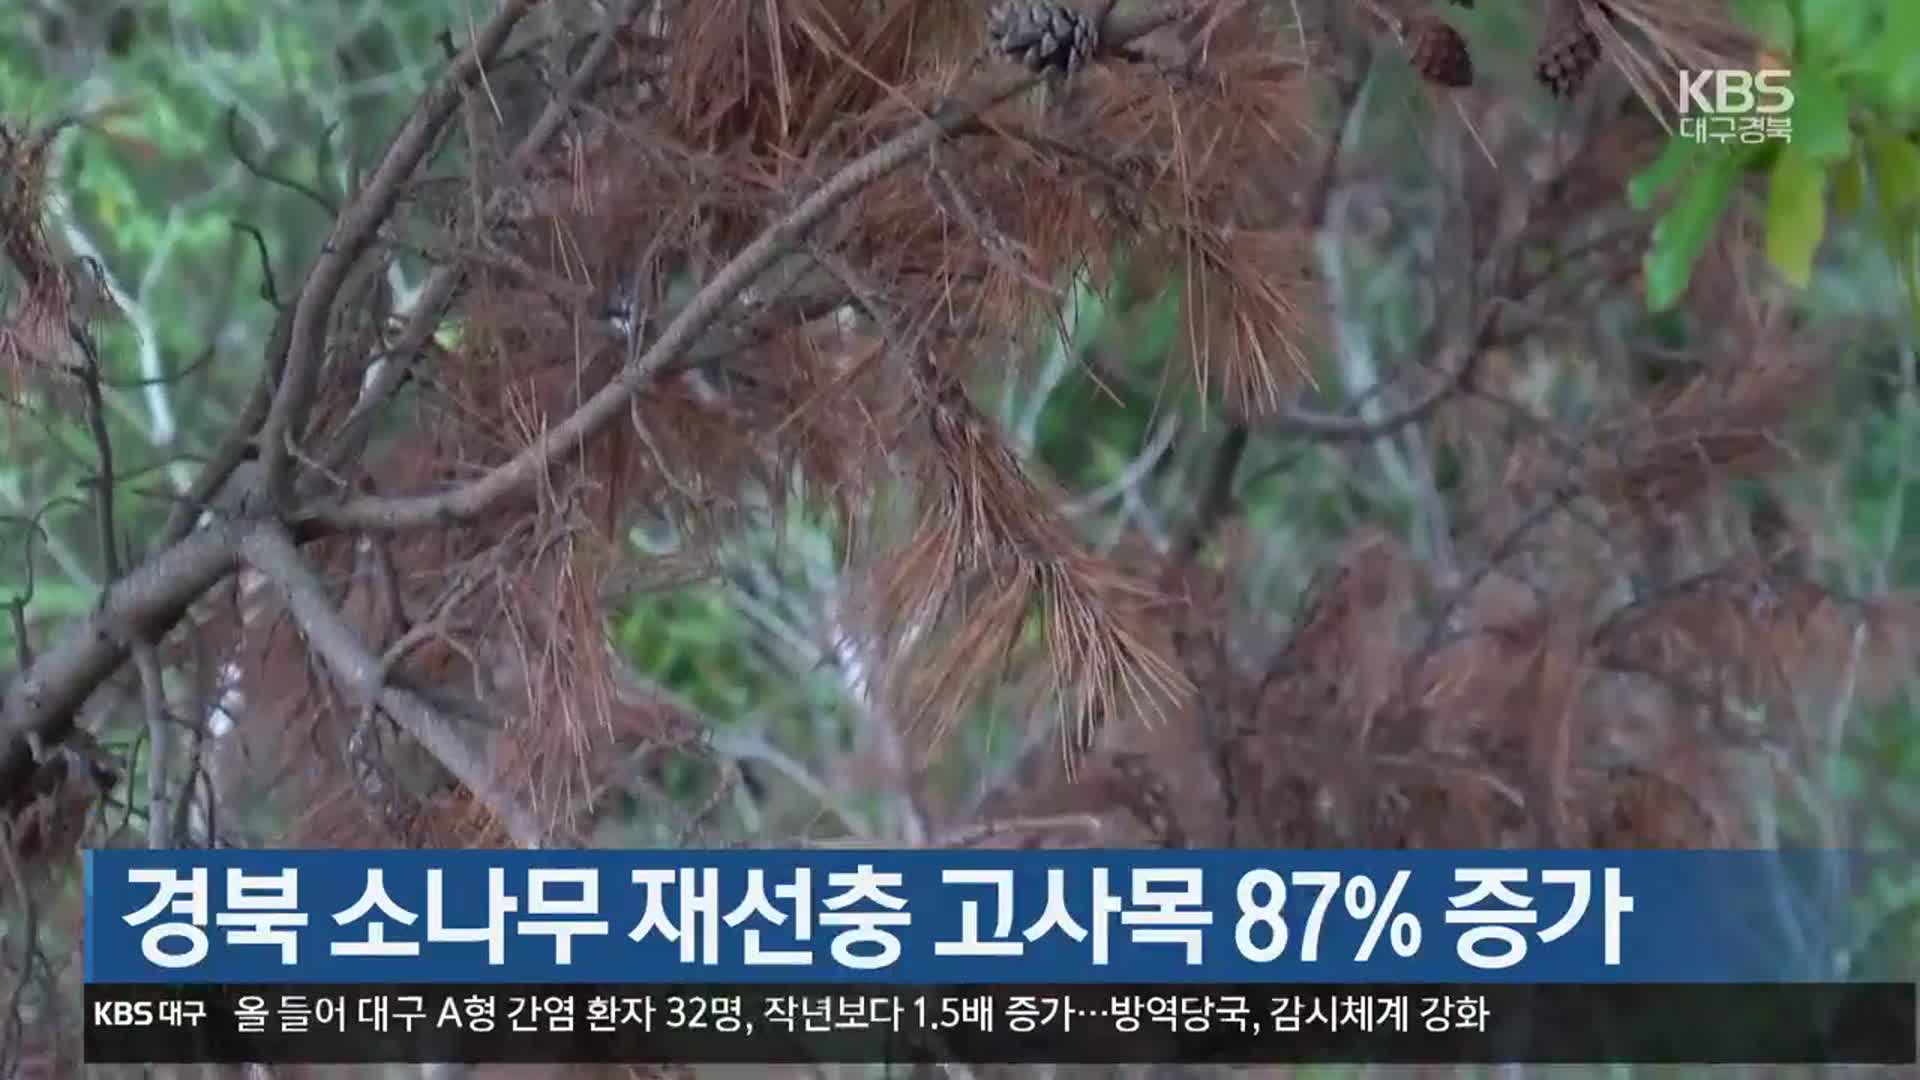 경북 소나무 재선충 고사목 87% 증가